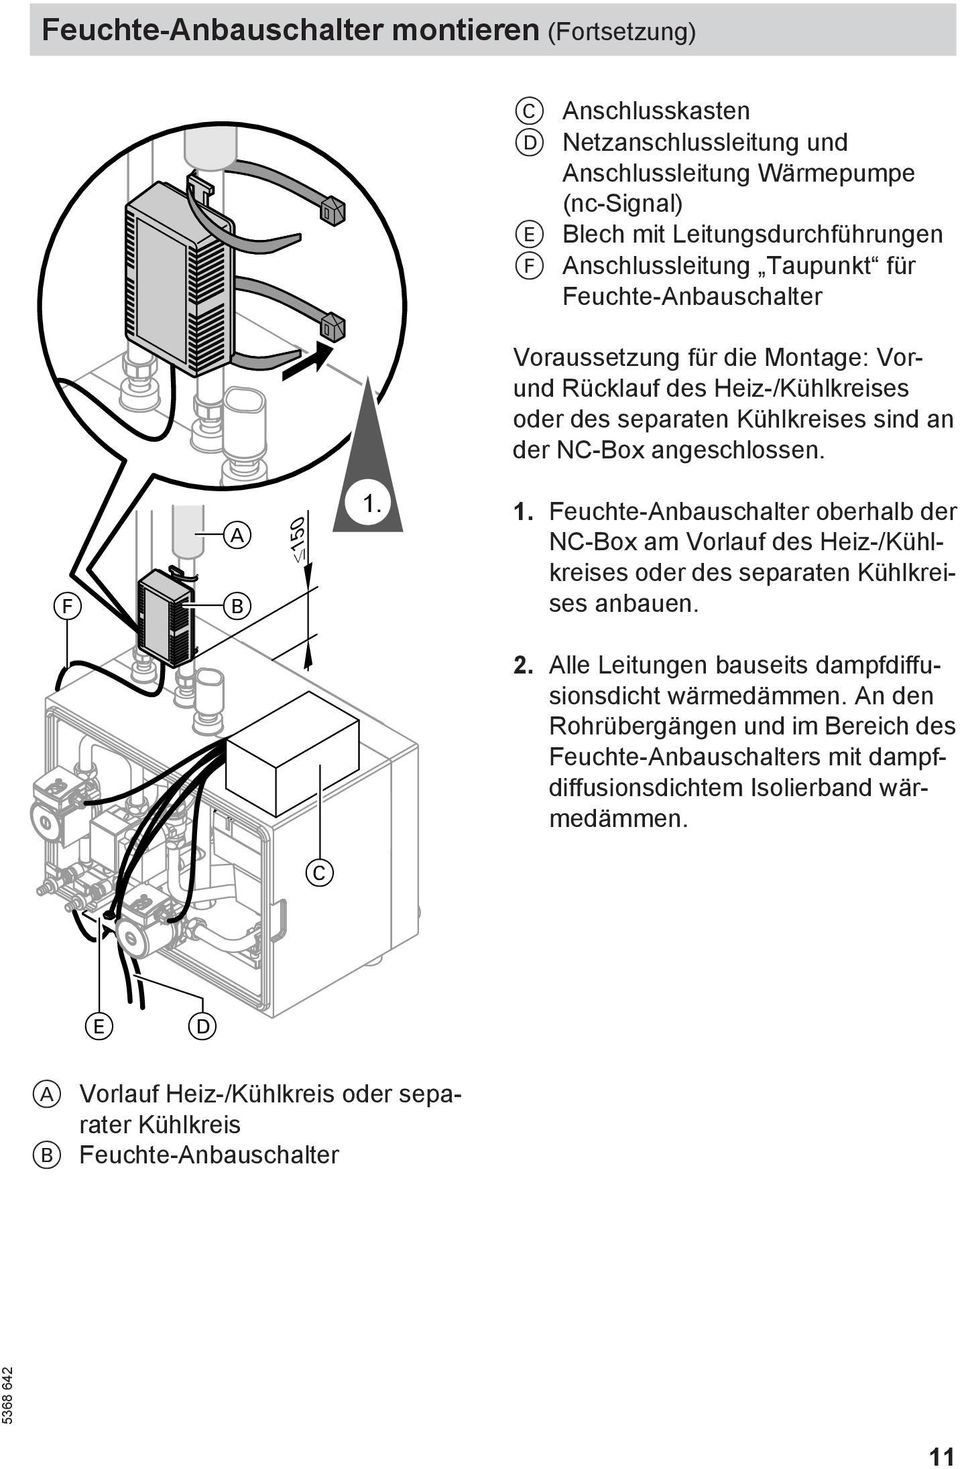 0 1. 1. Feuchte-Anbauschalter oberhalb der NC-Box am Vorlauf des Heiz-/Kühlkreises oder des separaten Kühlkreises anbauen. 2. Alle Leitungen bauseits dampfdiffusionsdicht wärmedämmen.